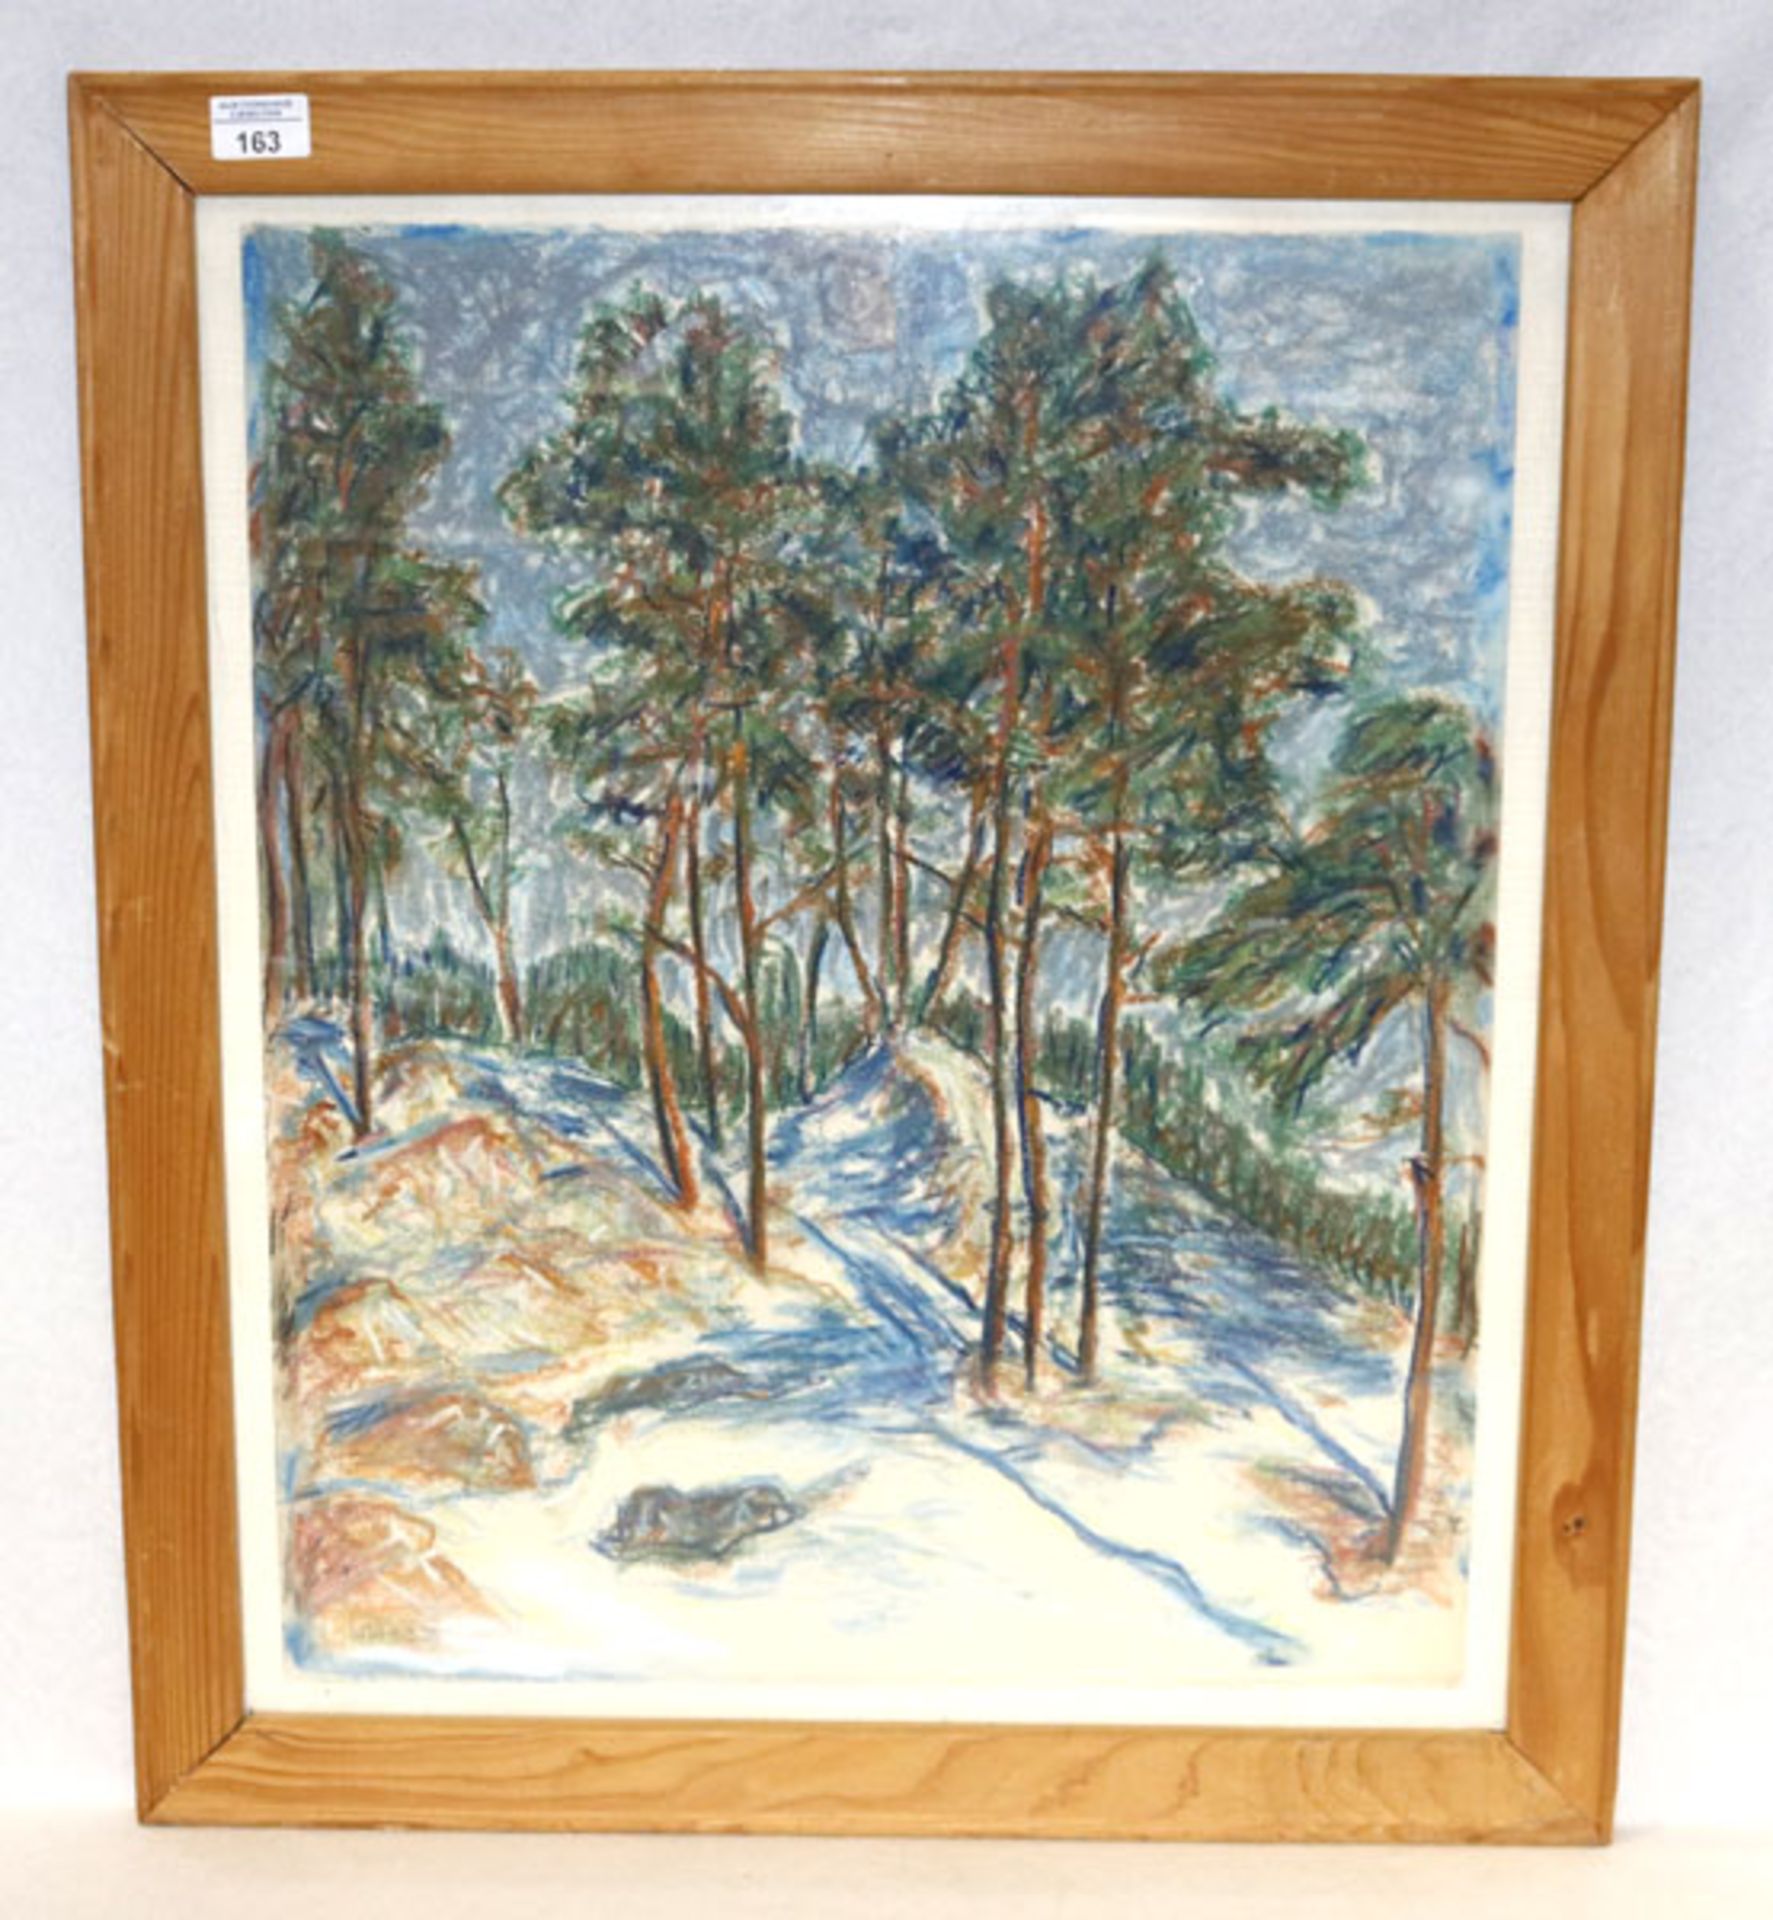 Gemälde 'Kiefernwald', monogrammiert WW, datiert 4.9.52, unter Glas gerahmt, Rahmen bestossen, incl.